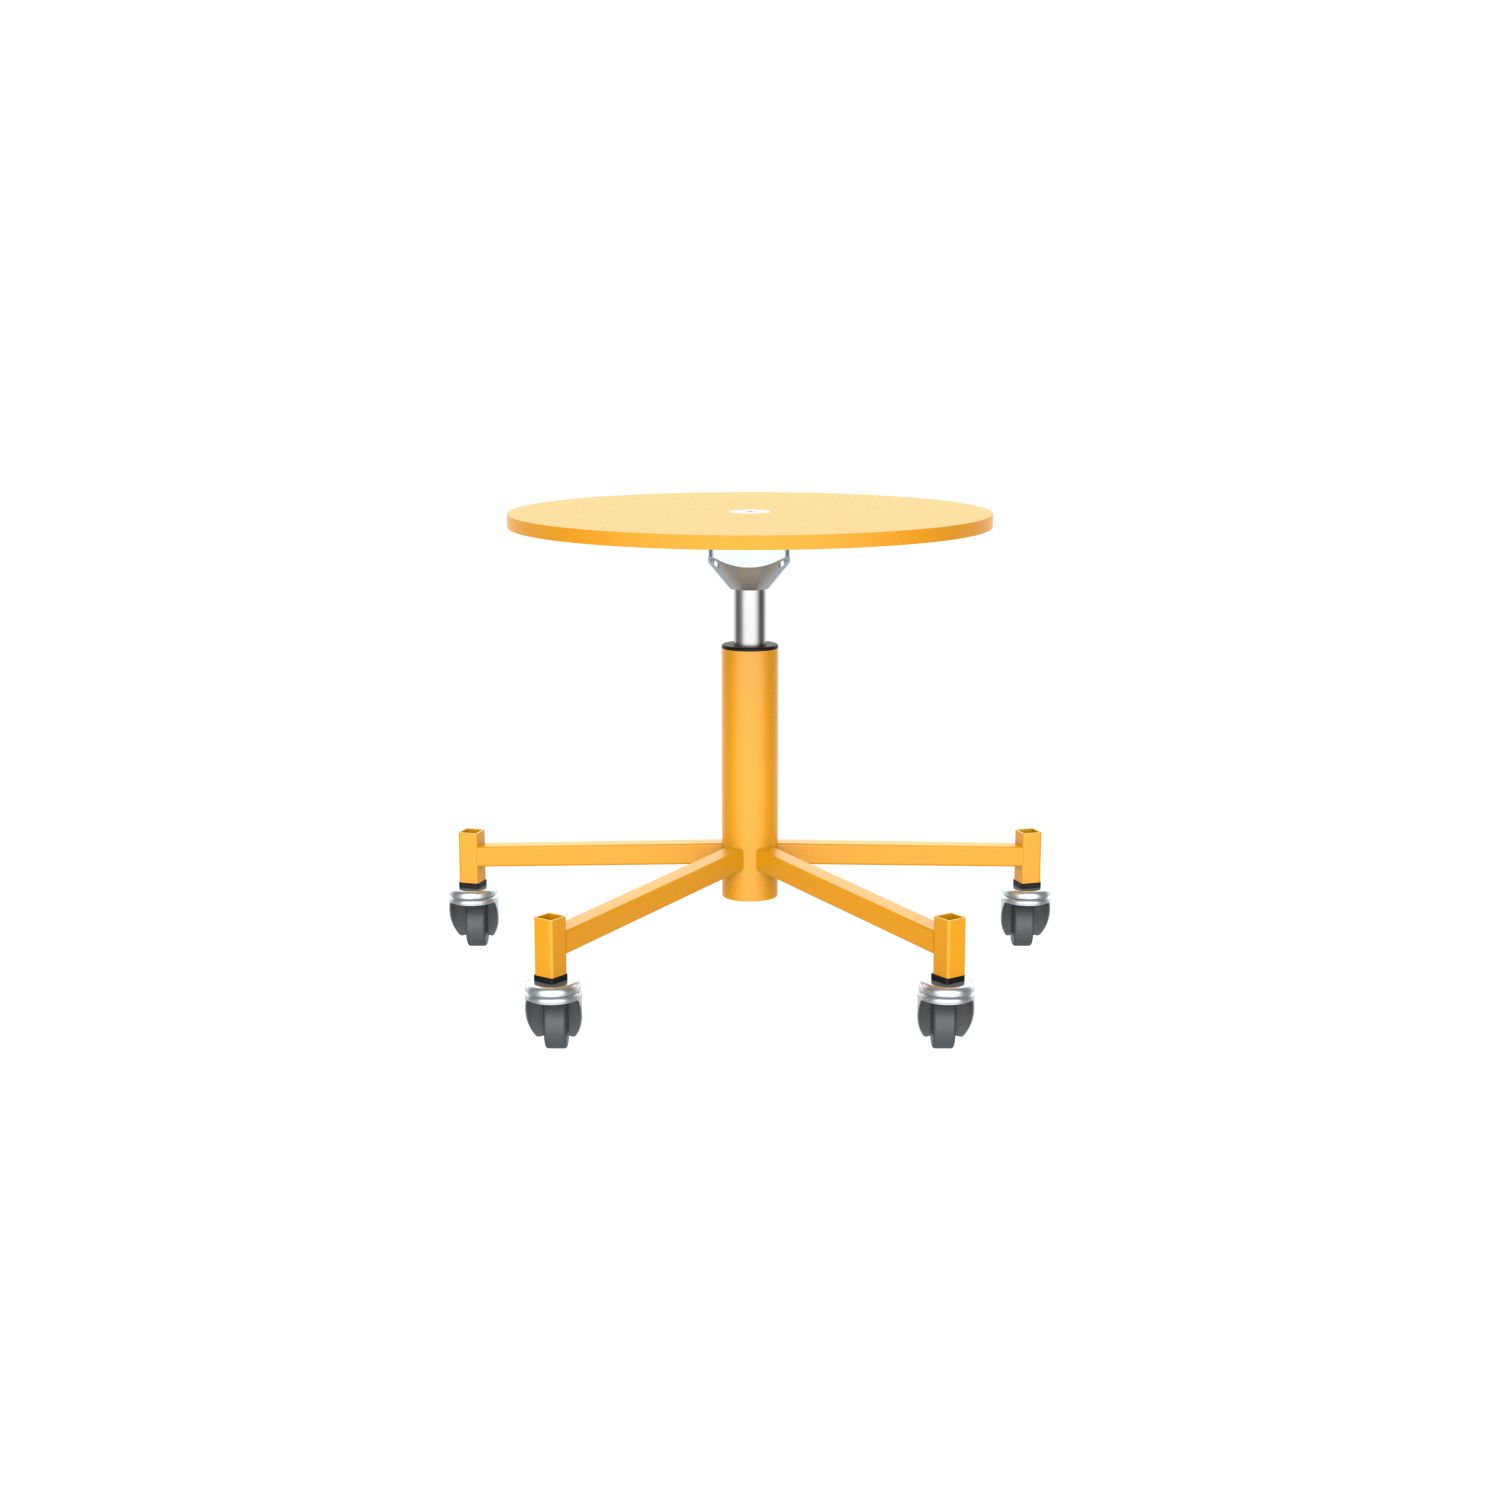 lensvelt piet hein eek mitw wooden stool with wheels signal yellow ral1003 signal yellow ral1003 with wheels